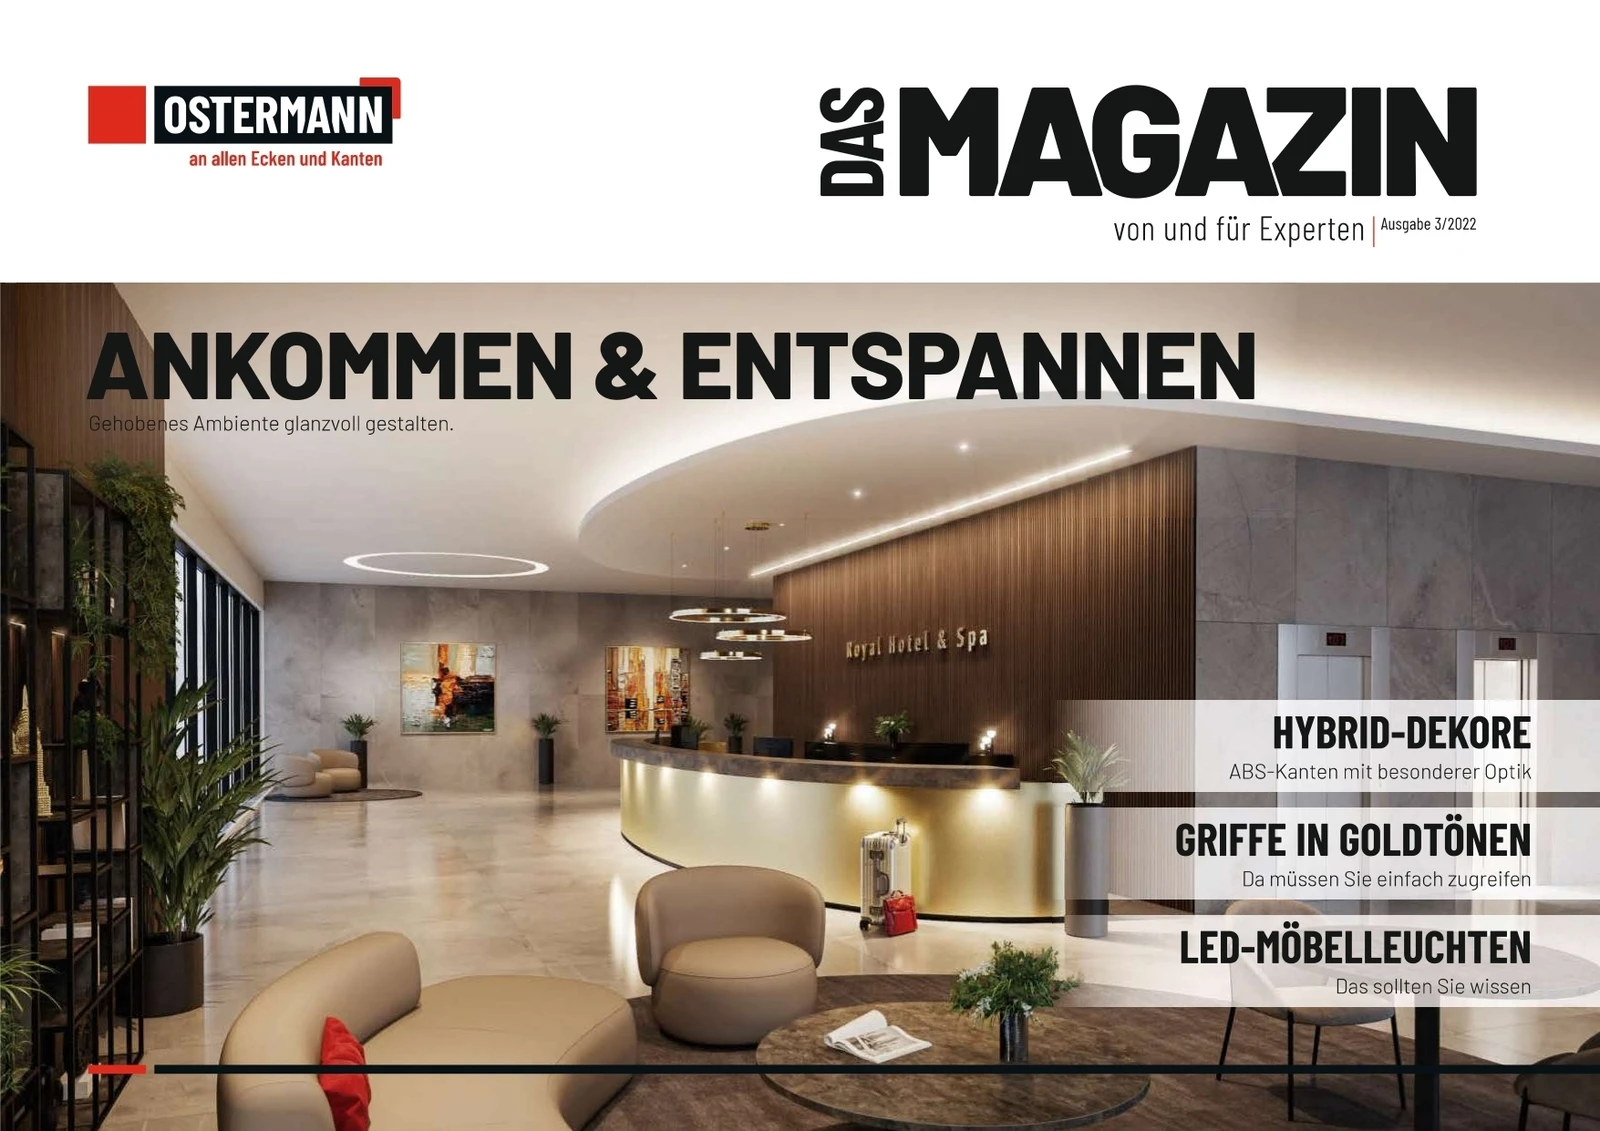 ANKOMMEN & ENTSPANNEN - Das Magazine 3 2022 Ostermann